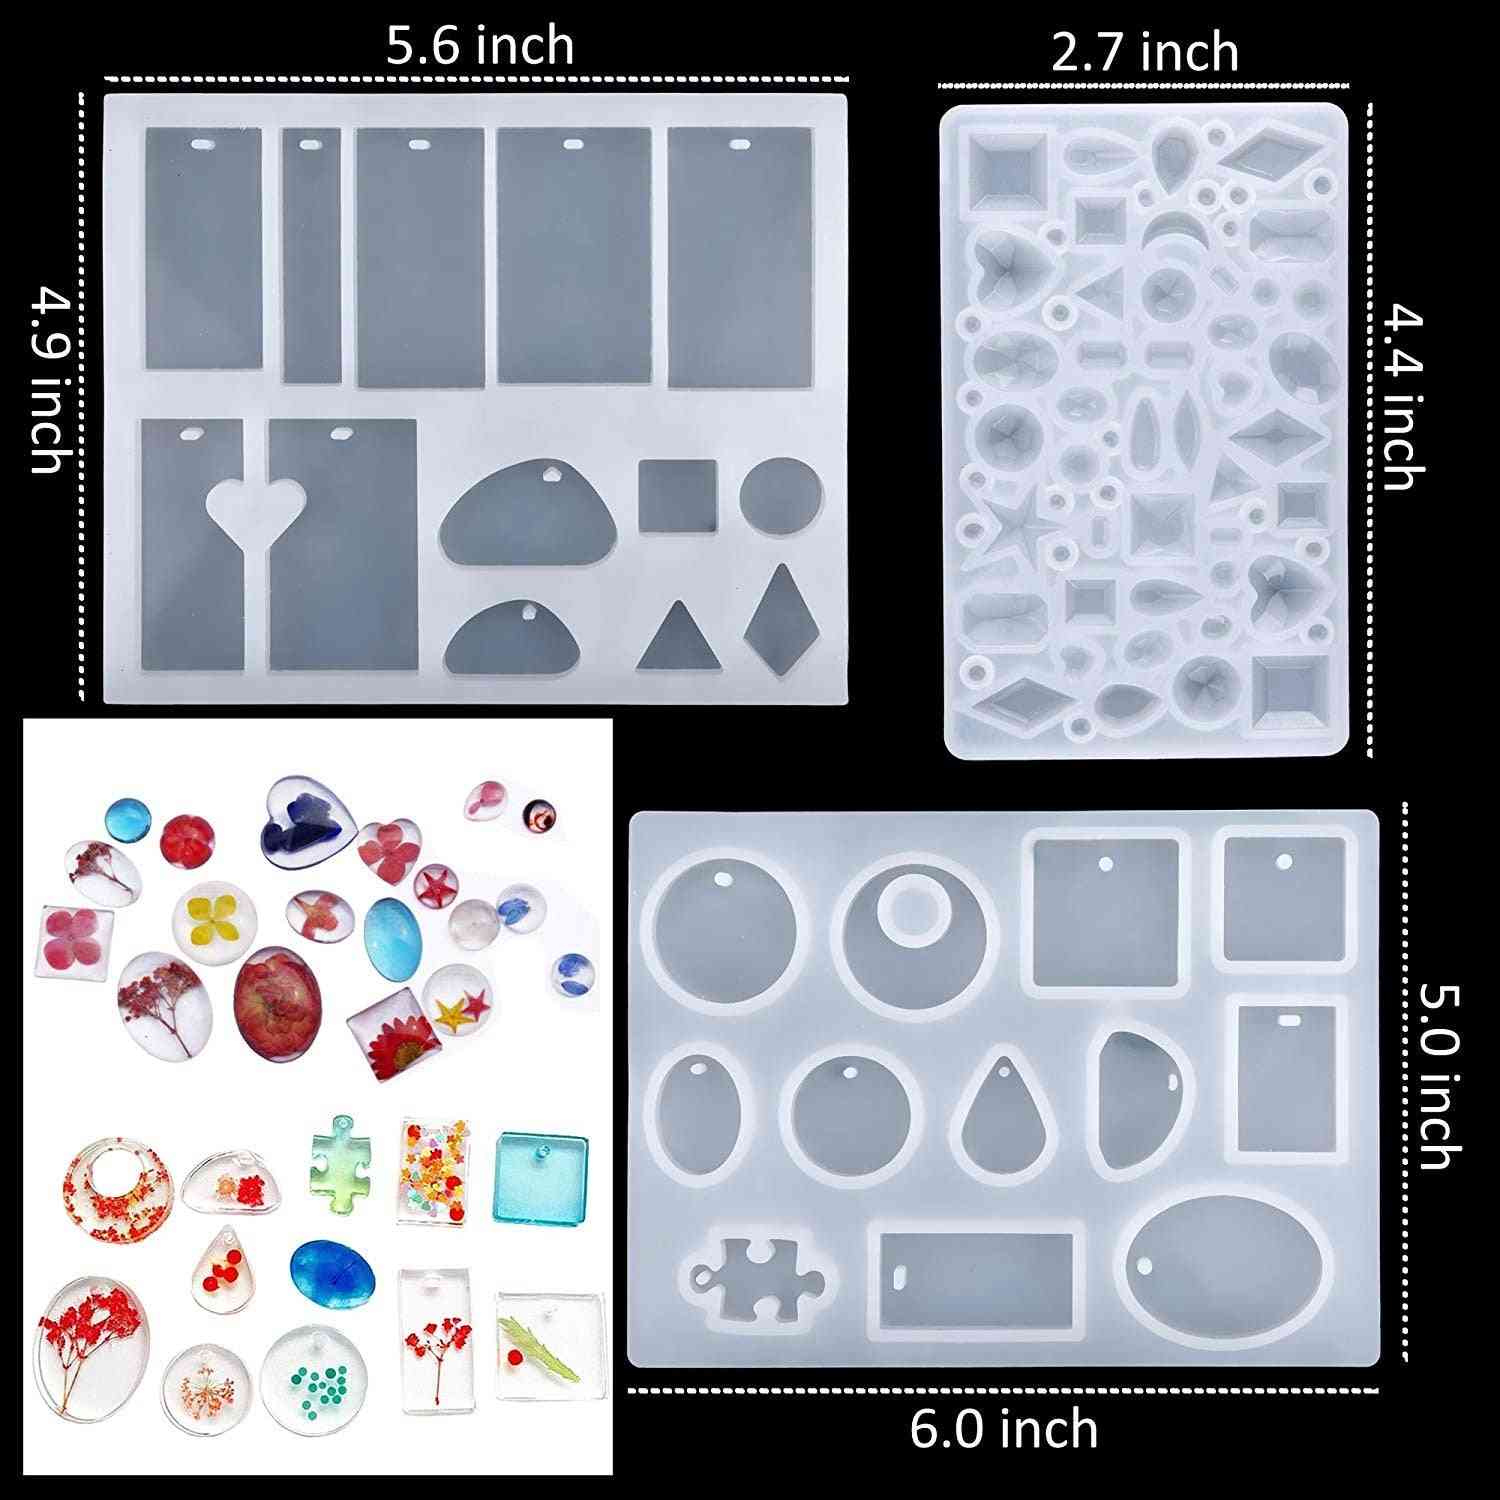 Conjunto de moldes e ferramentas de fundição de silicone com um saco de armazenamento preto para a confecção de joias artesanais